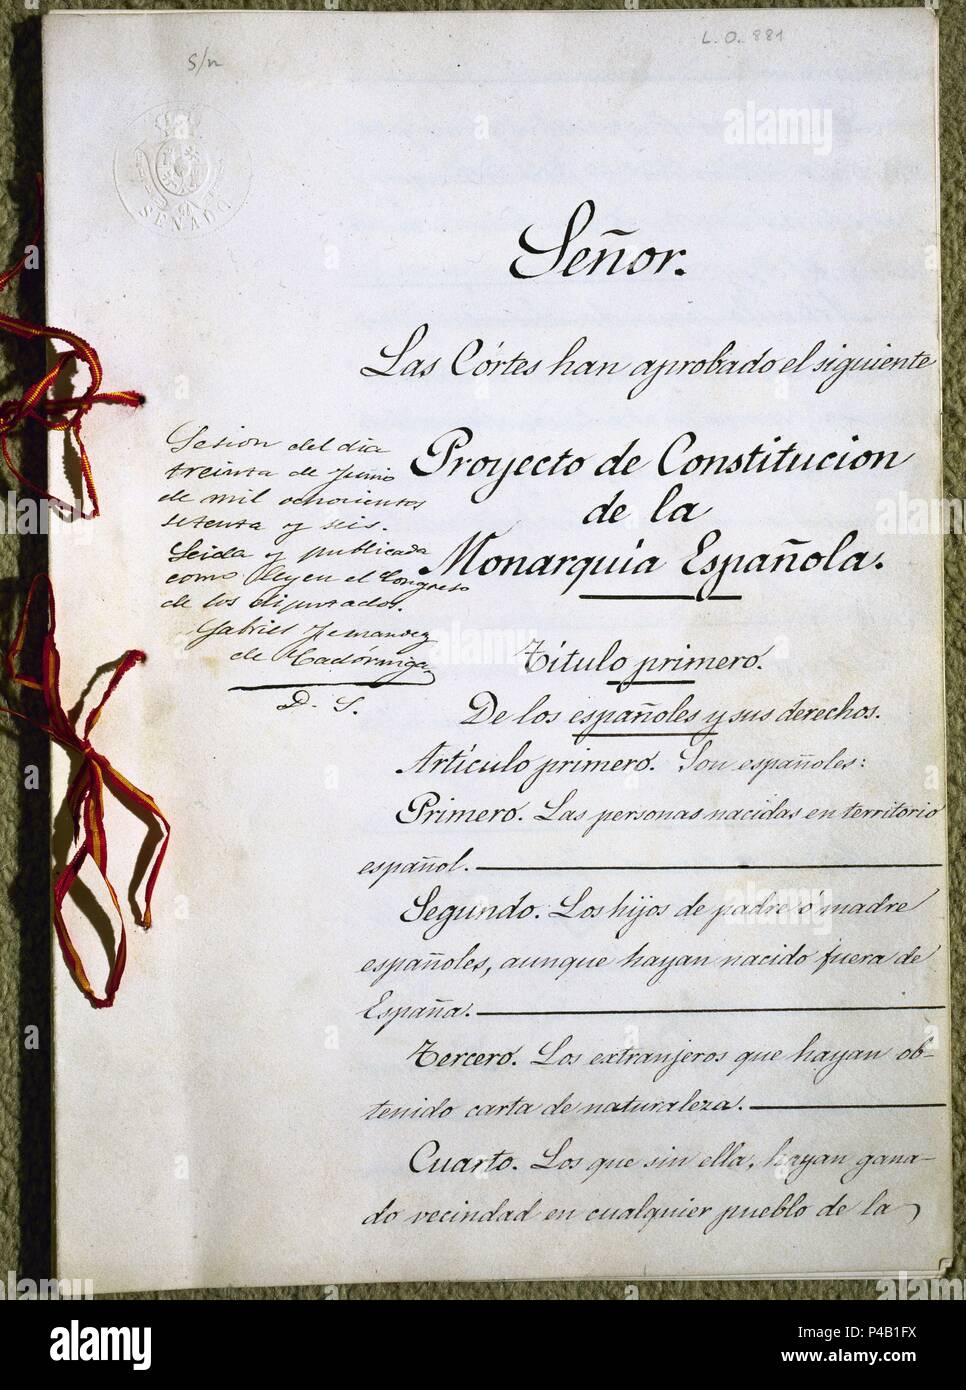 CONSTITUCION ESPAÑOLA-30 DE JUNIO 1876-PORTADA. Location: CONGRESO DE LOS DIPUTADOS-BIBLIOTECA, MADRID, SPAIN. Stock Photo